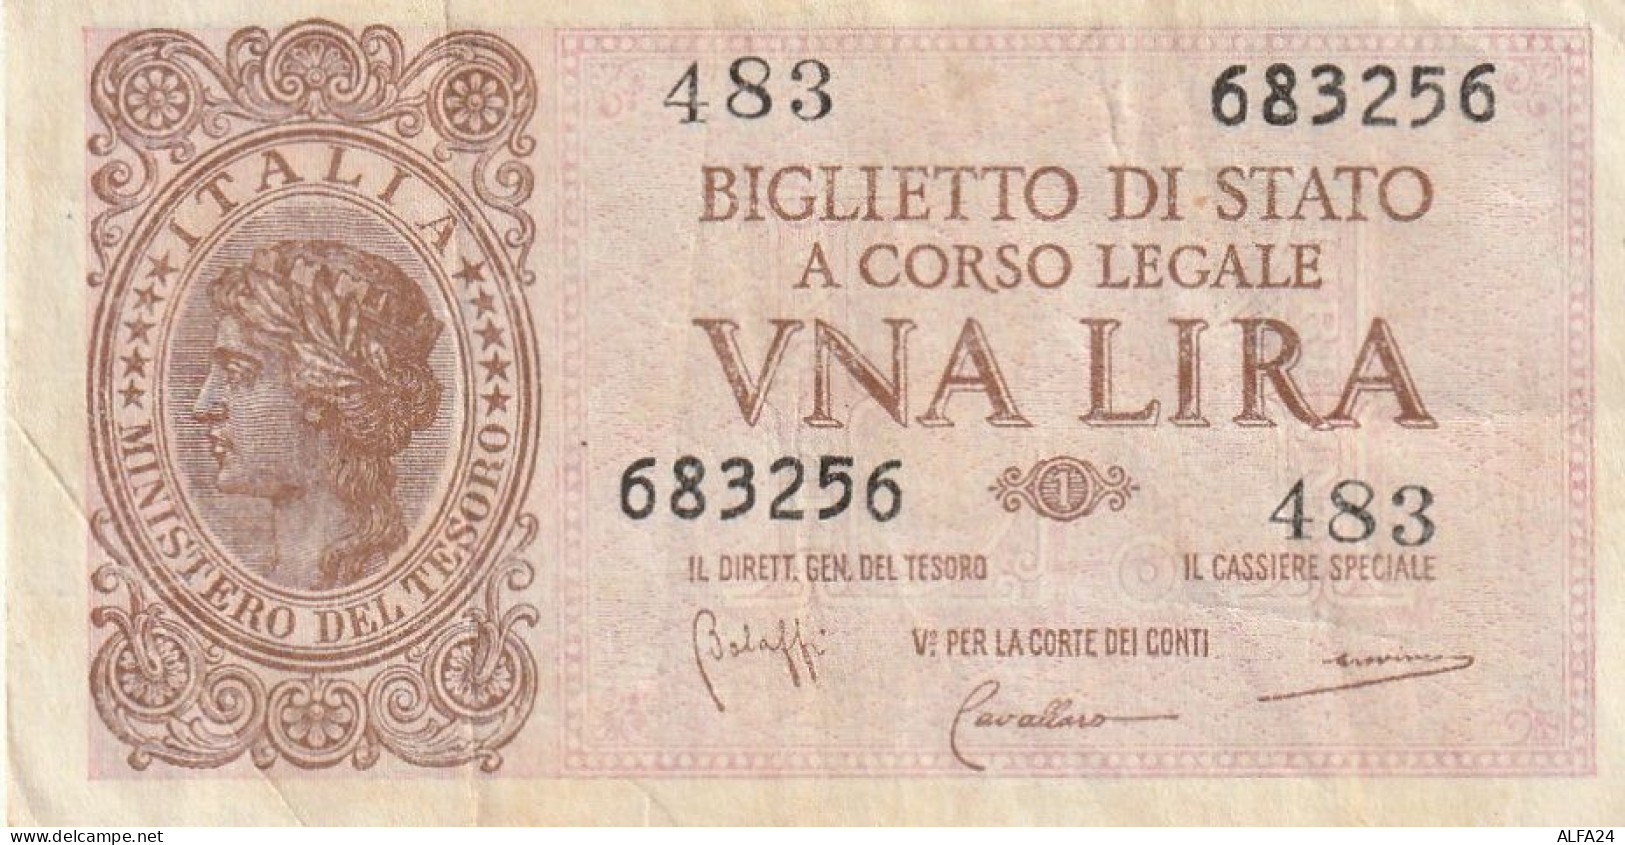 BANCONOTA BIGLIETTO DI STATO ITALIA 1 LIRA VF  (B_363 - Italia – 1 Lira